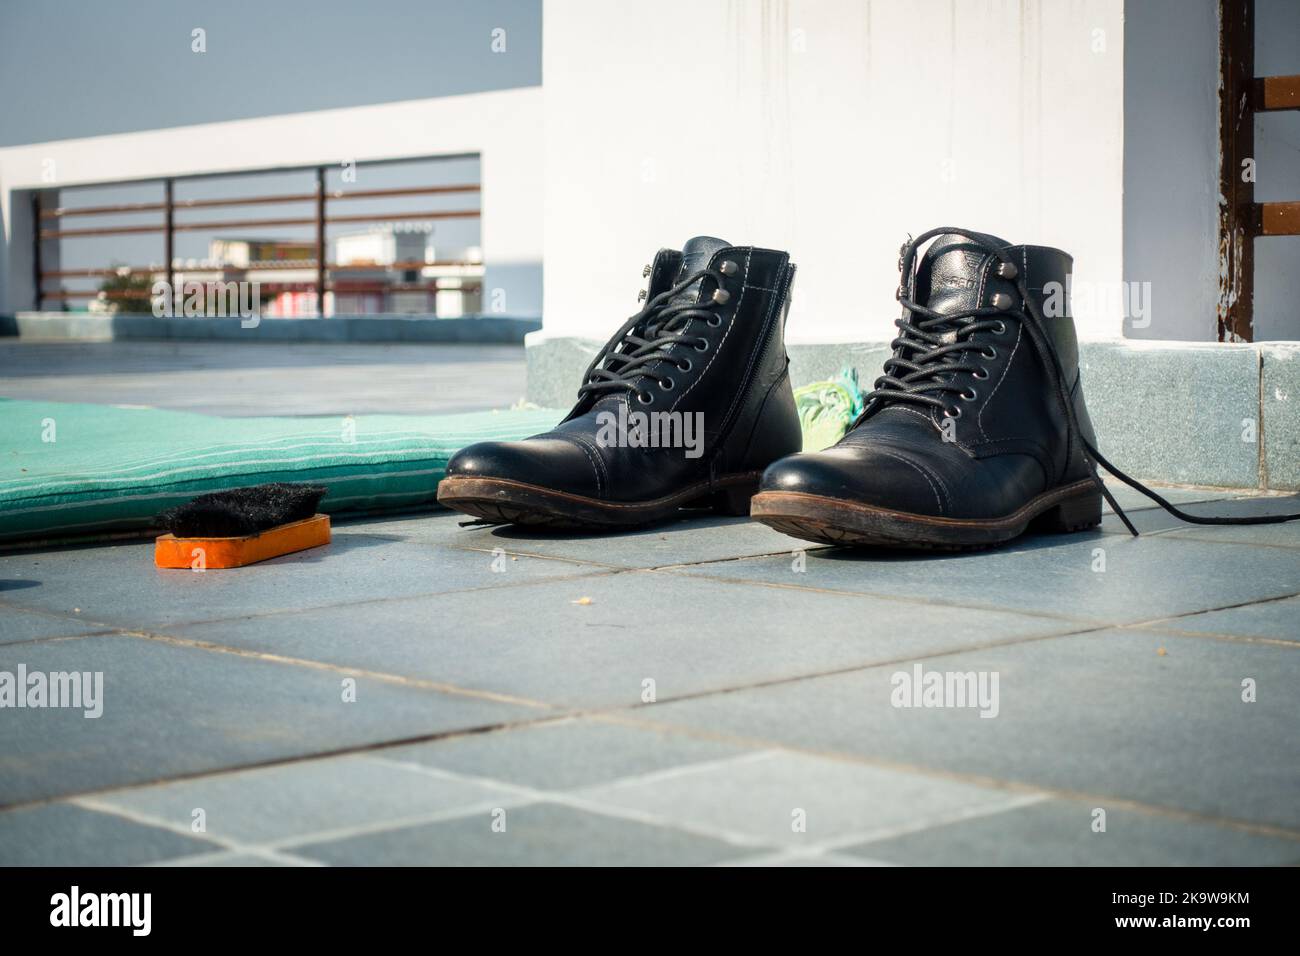 February 8nd 2022. Uttarakhand India. Black leather high top boots polished. India Stock Photo